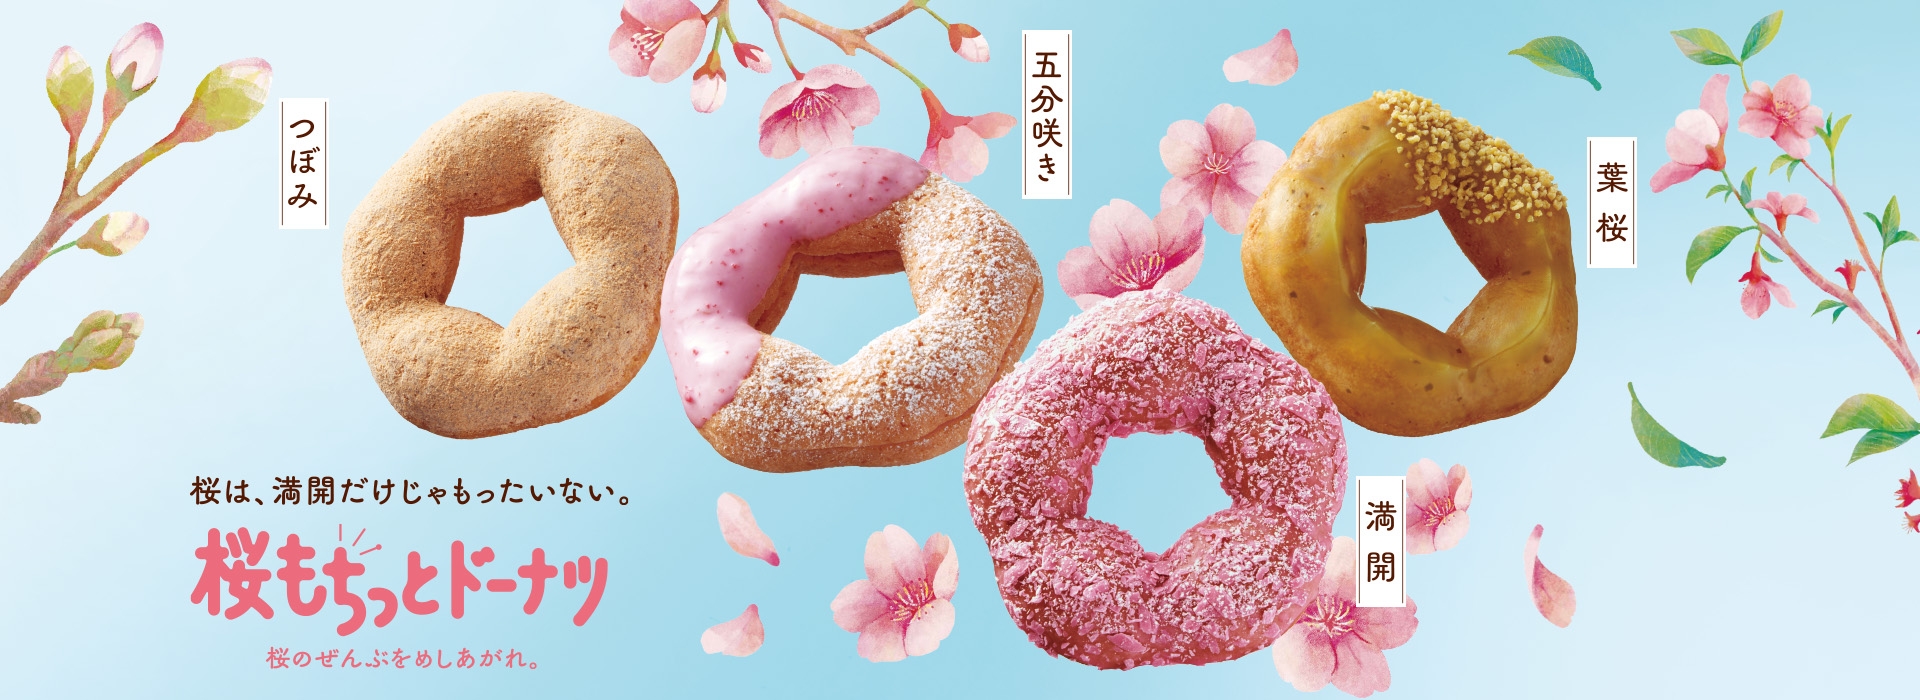 2023 일본 미스터 도넛 벚꽃 메뉴